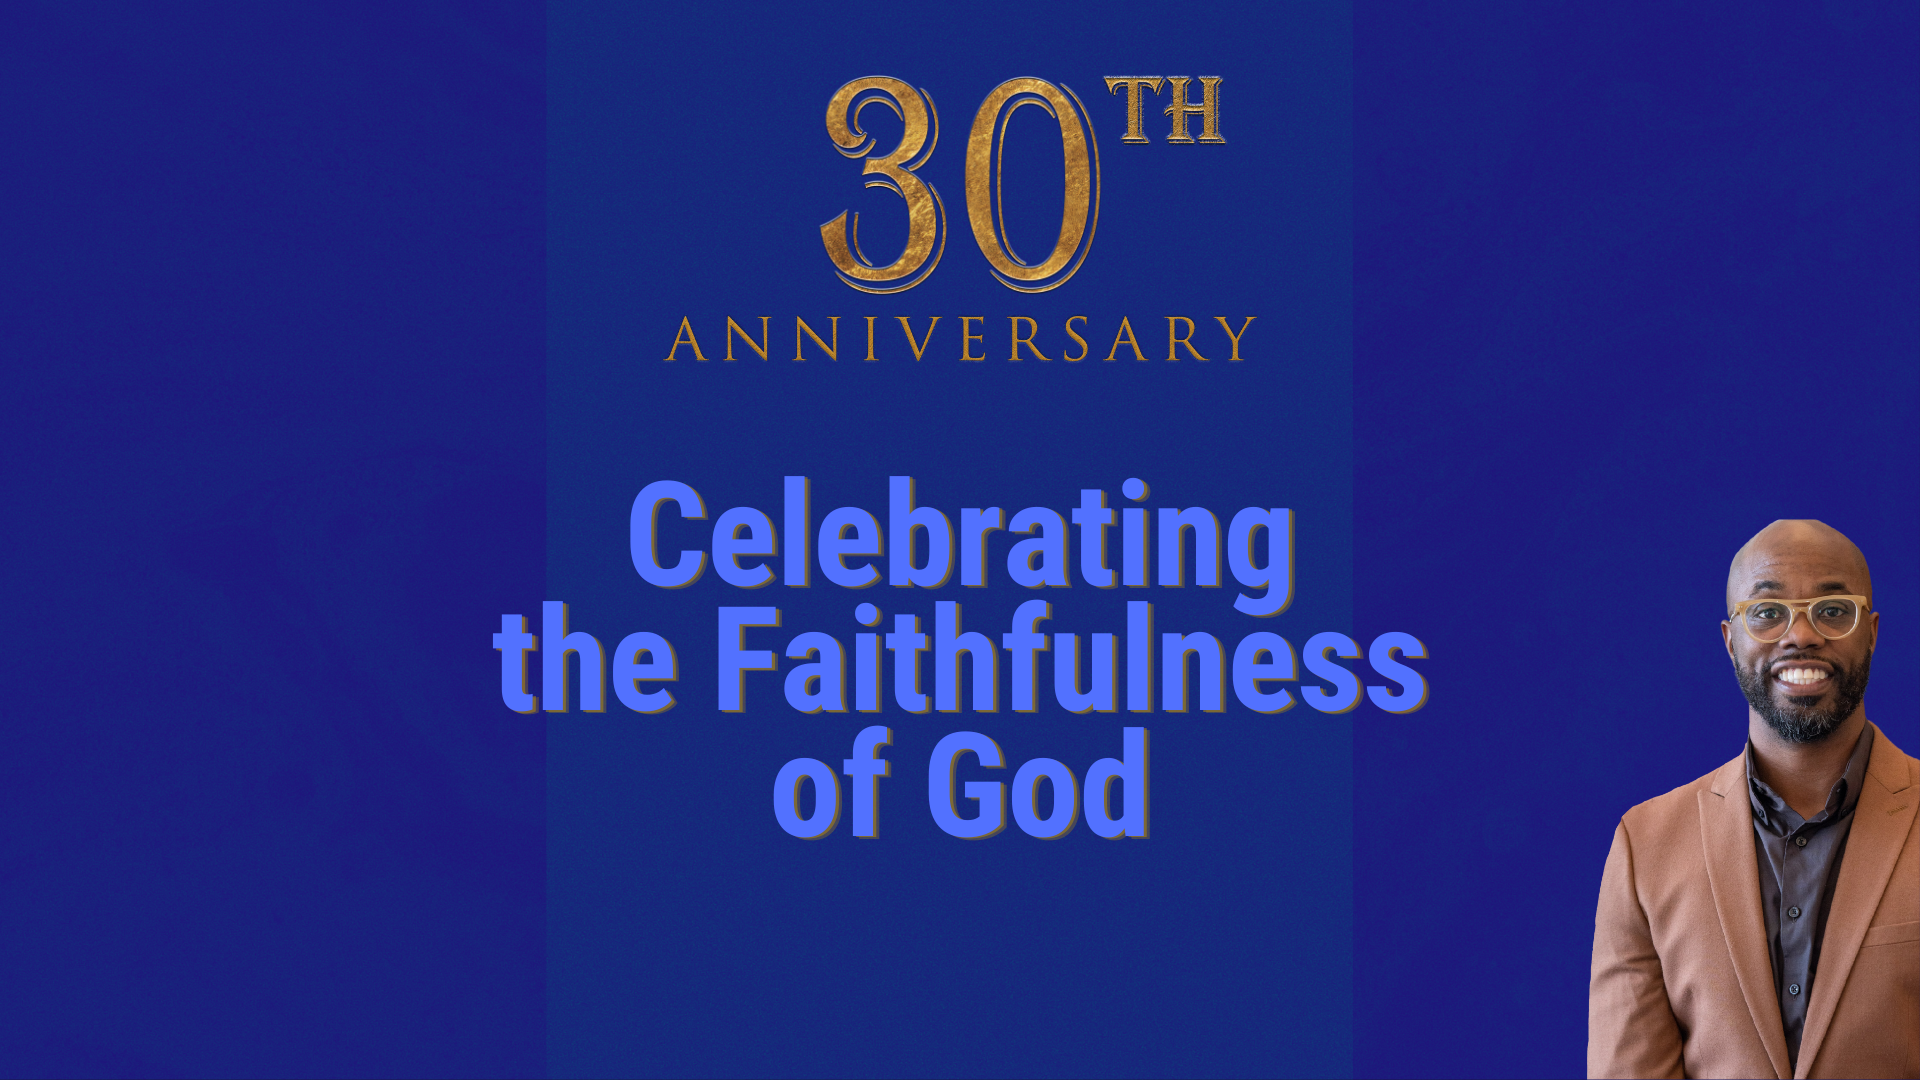 Celebrating 30 Years of God’s Faithfulness head image